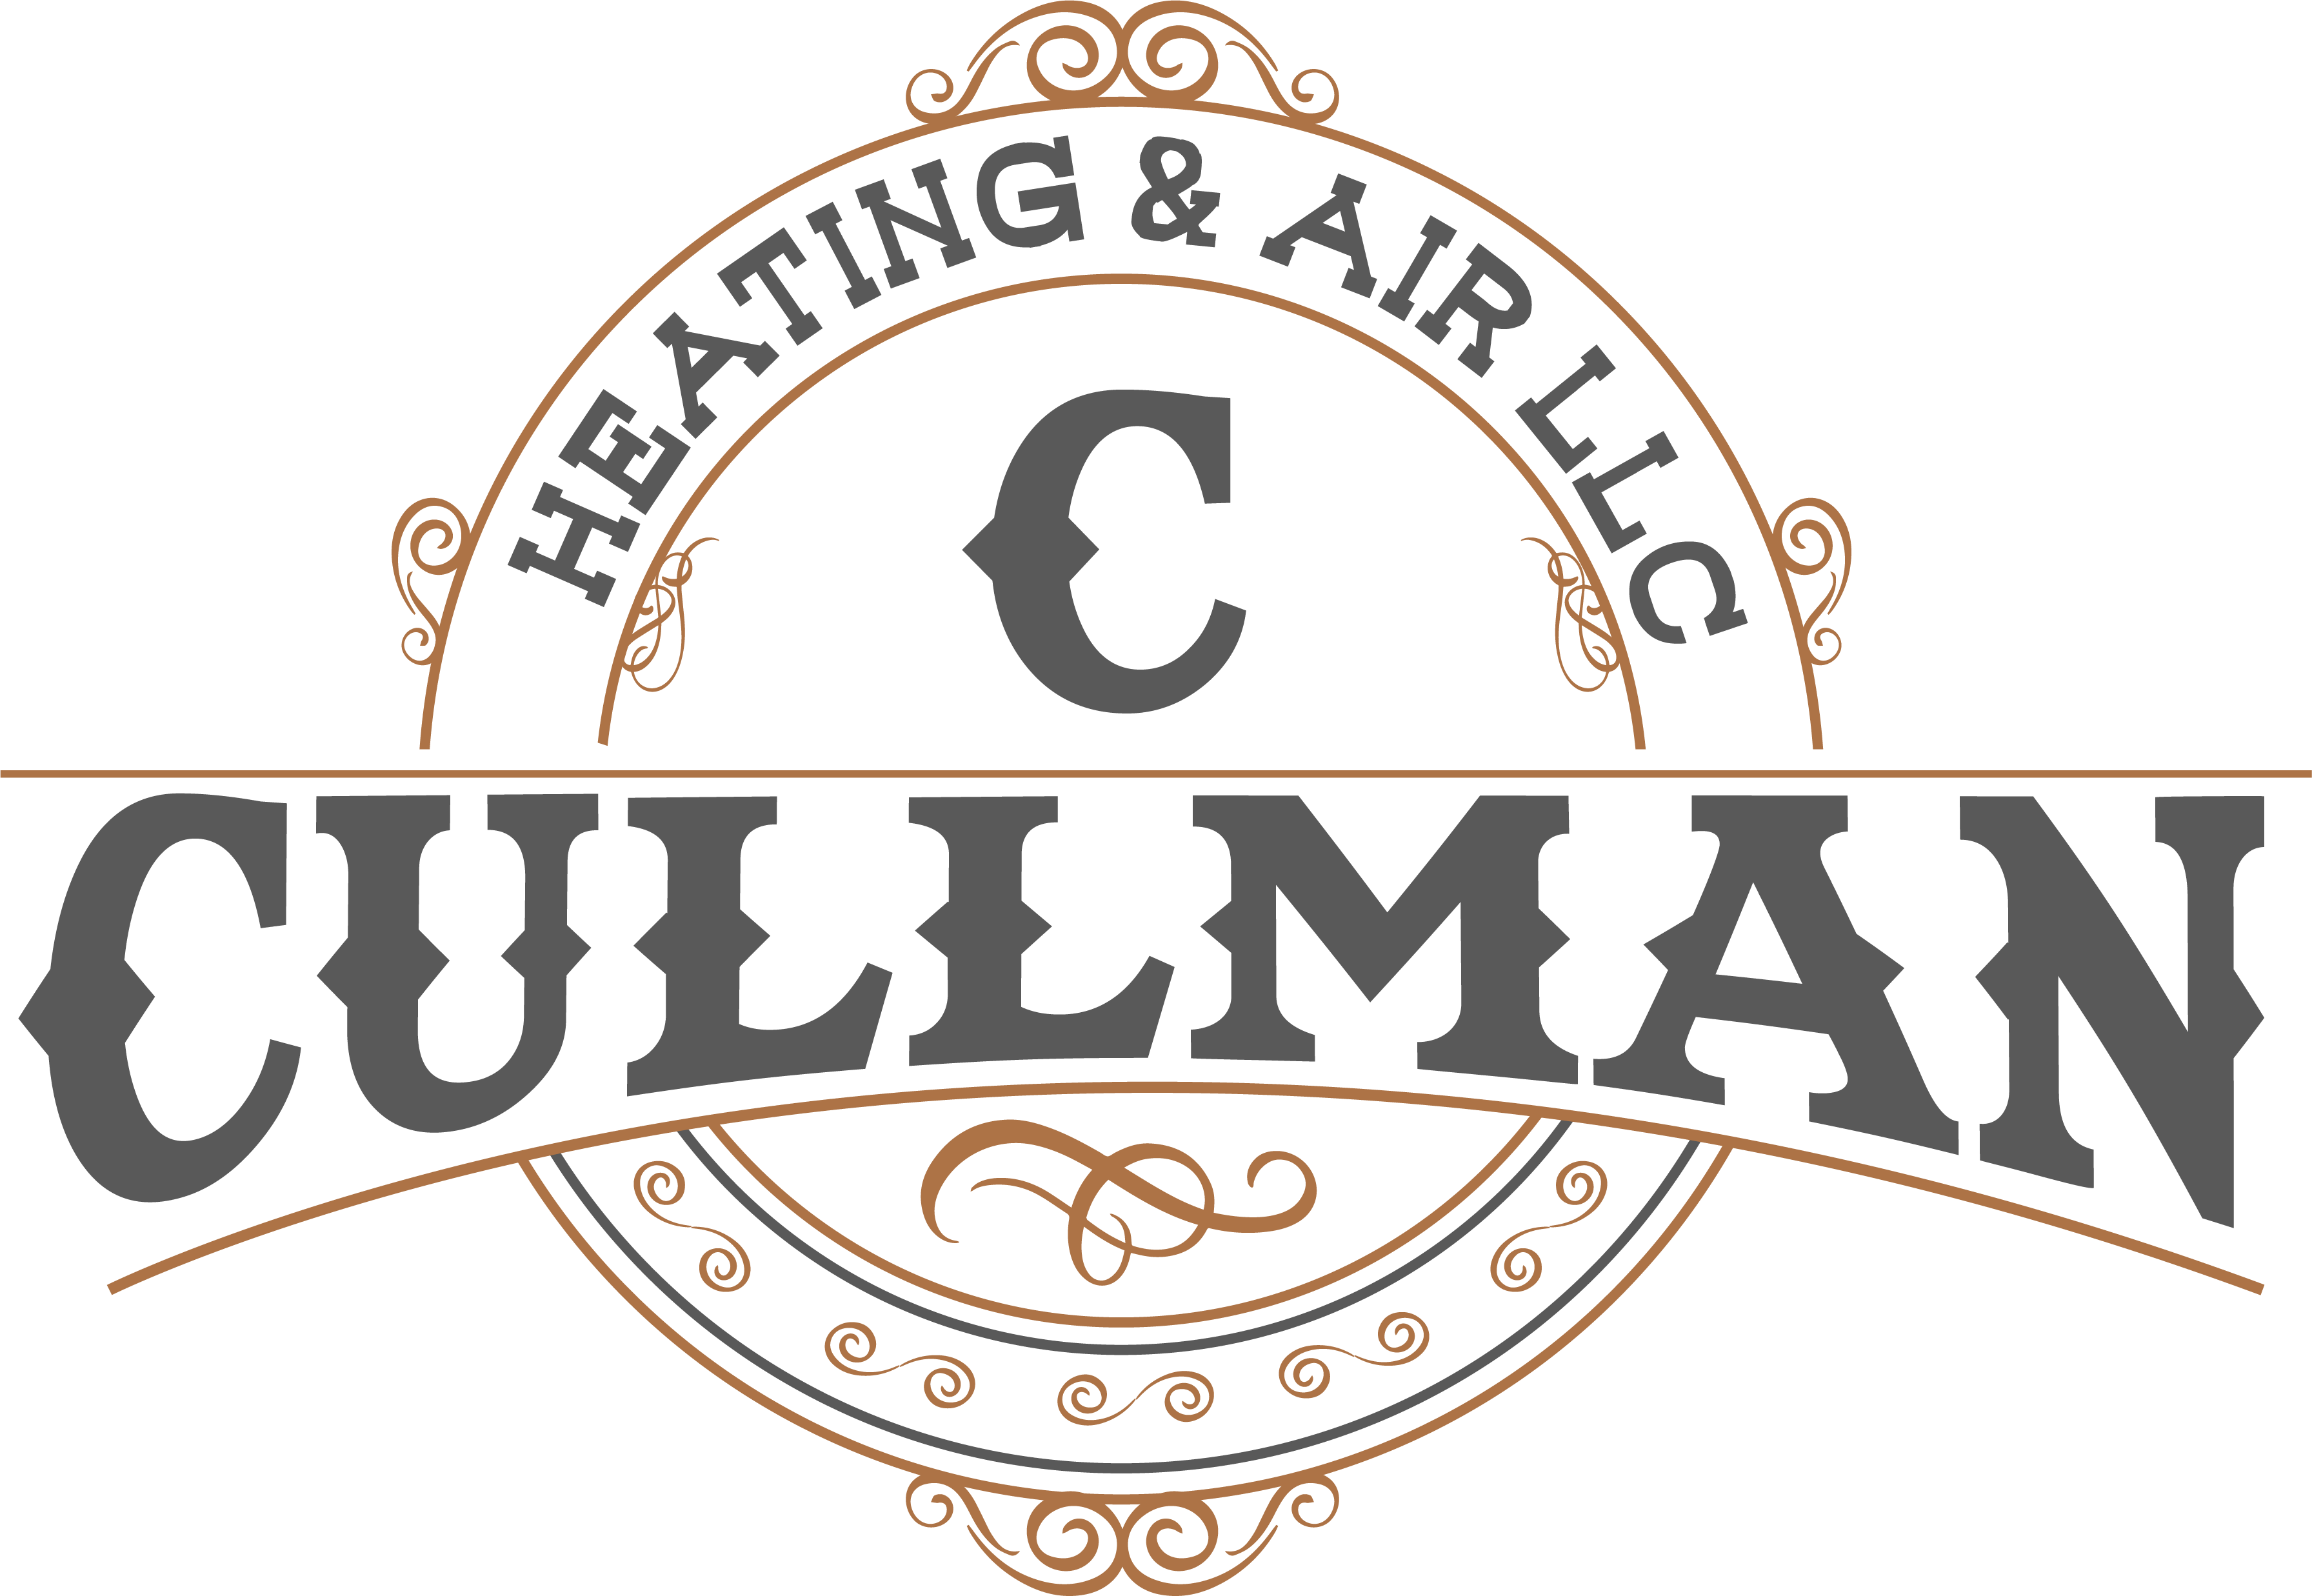 Cullman Heating and Air